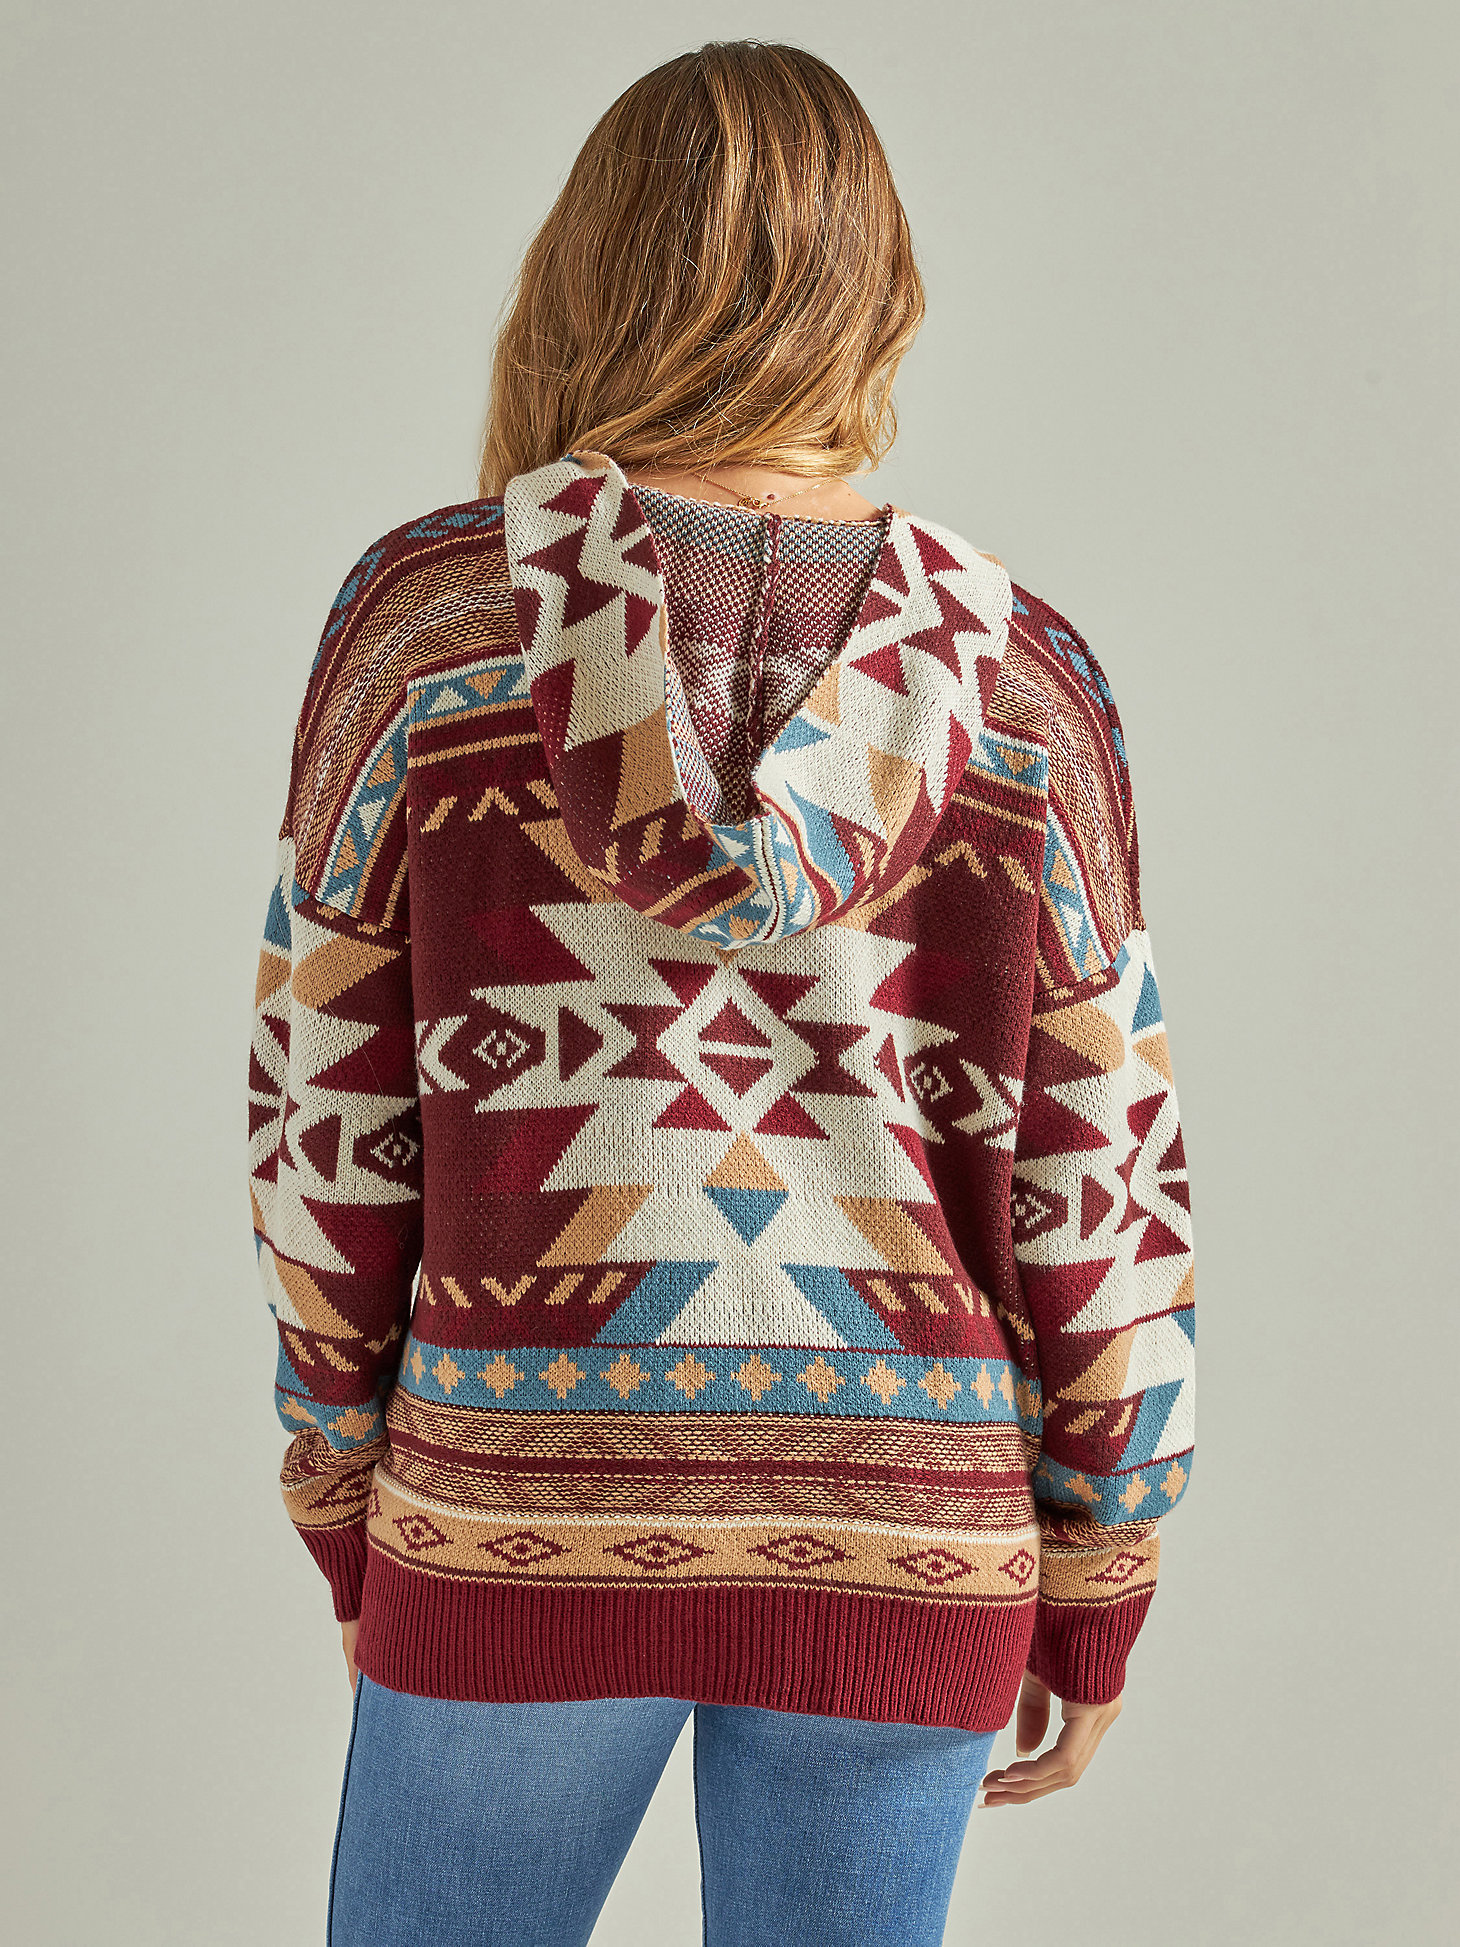 Women's Wrangler Retro® Southwestern Full Zip Hooded Sweater in Burgundy alternative view 2